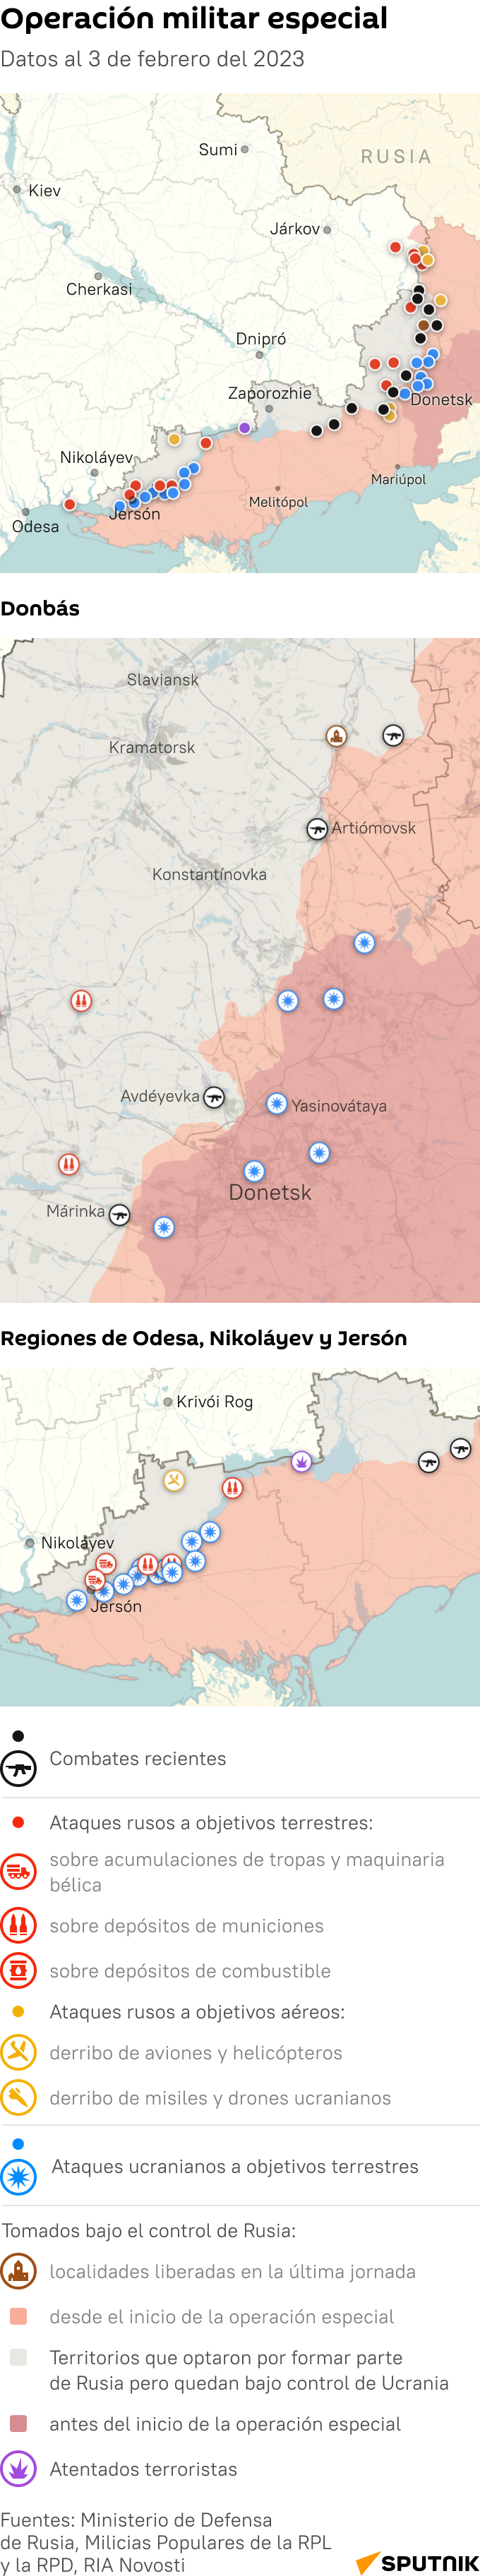 Mapa: cómo avanza la operación especial de Rusia en Ucrania - Sputnik Mundo